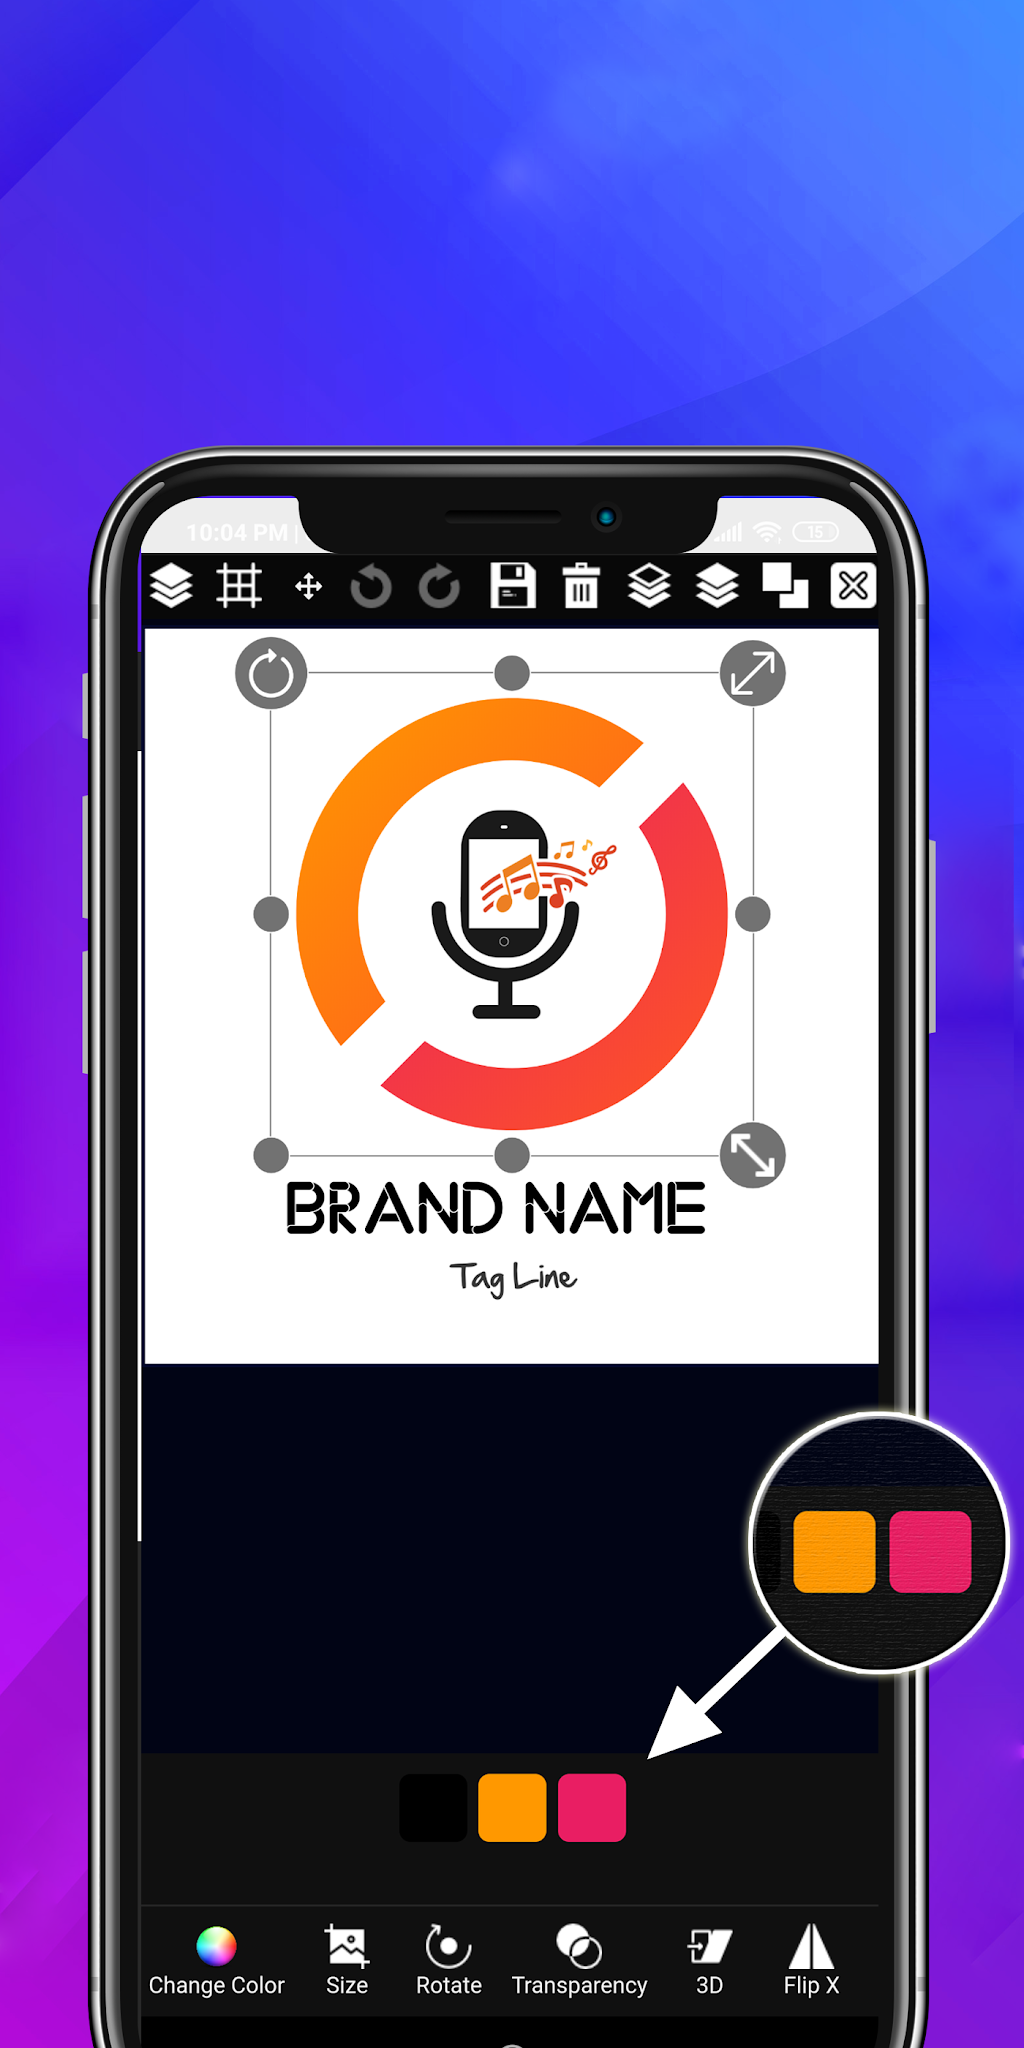 best logo maker app for android 2021